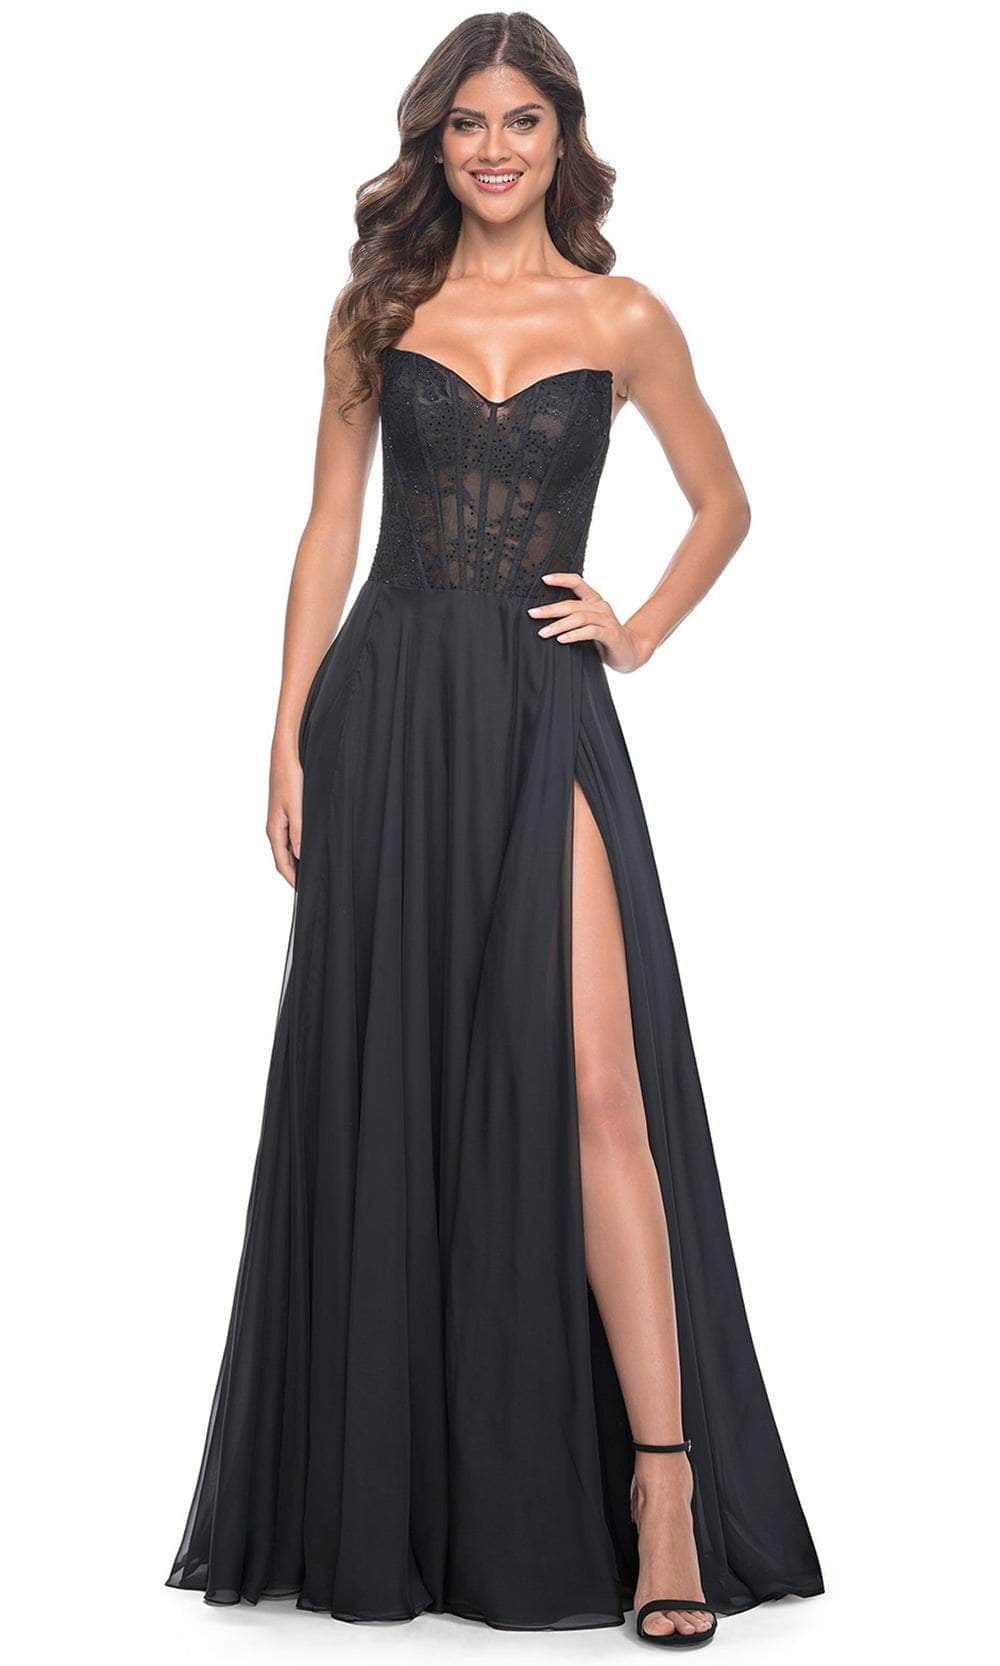 La Femme 32311 - Sweetheart Lace Sheer Bodice Prom Dress
